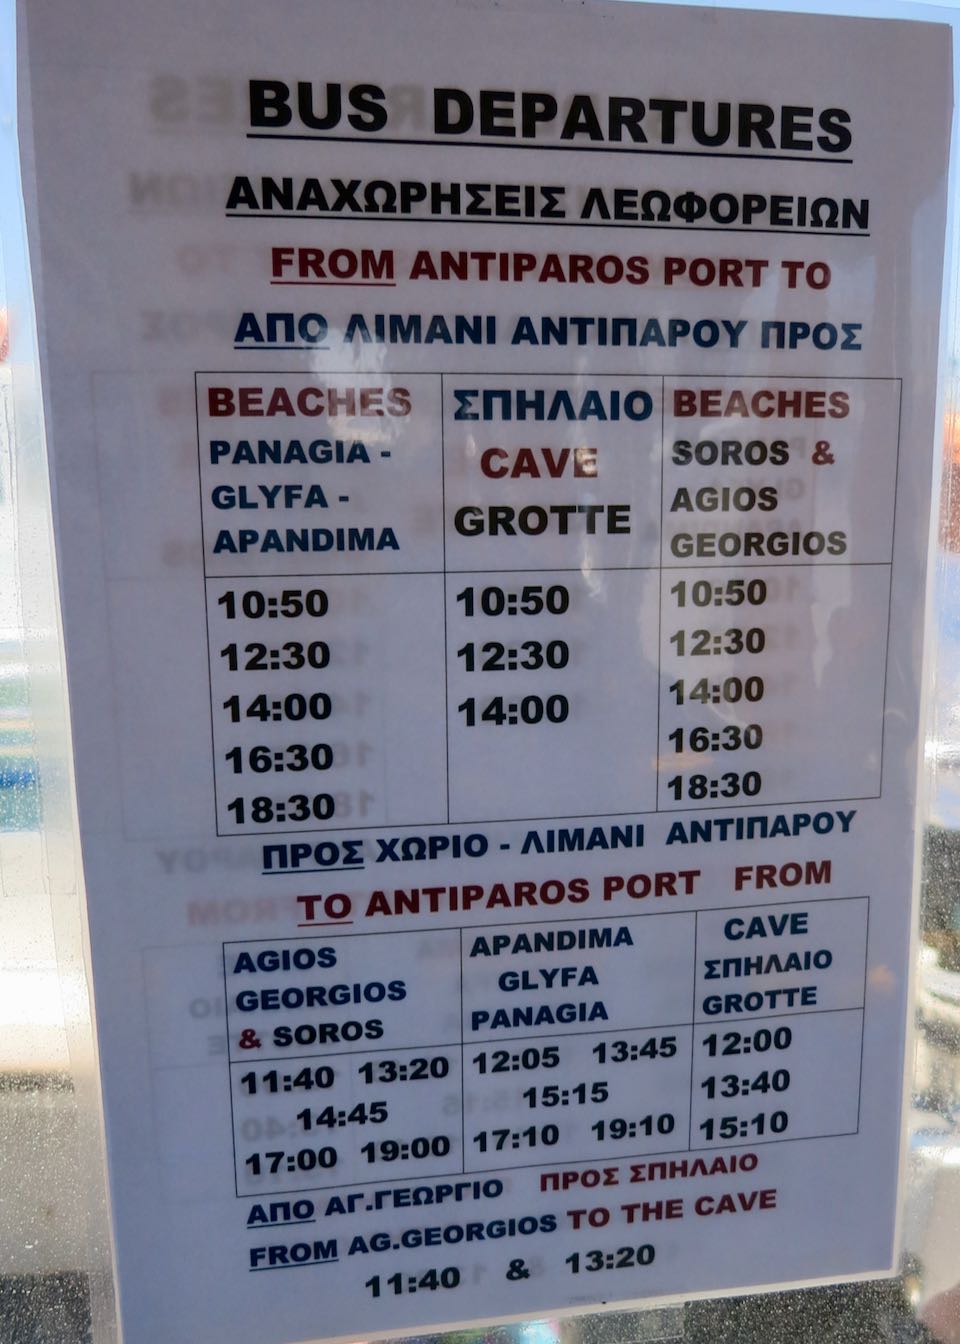 Antiparos bus schedule.